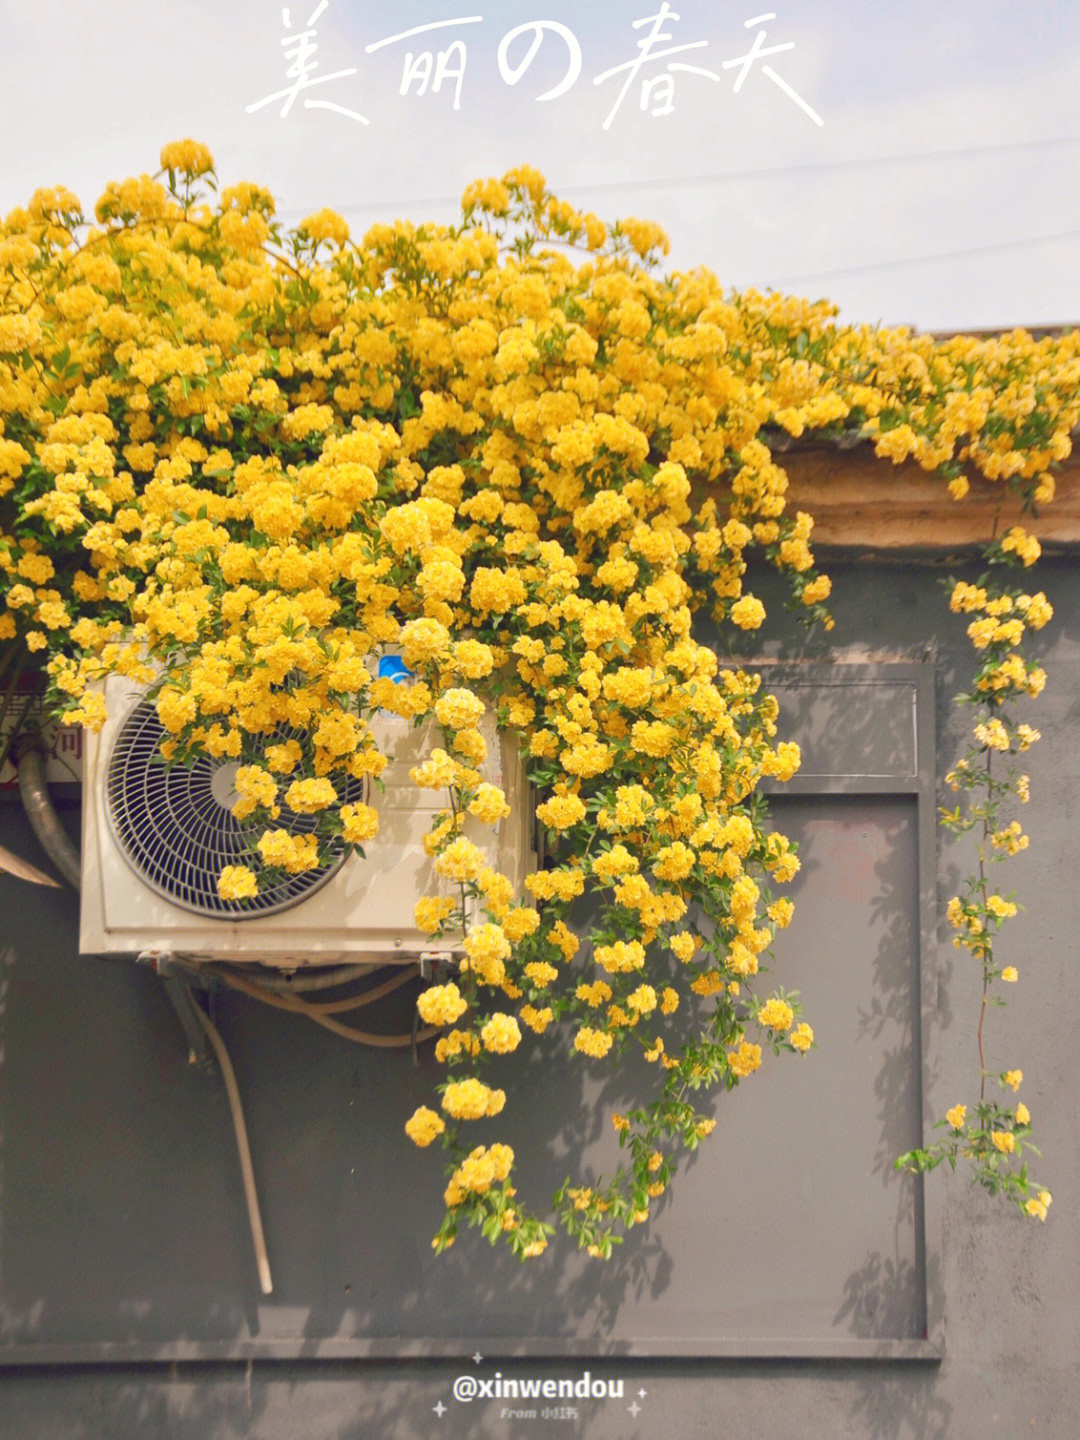 扬州黄色木香花小众景点